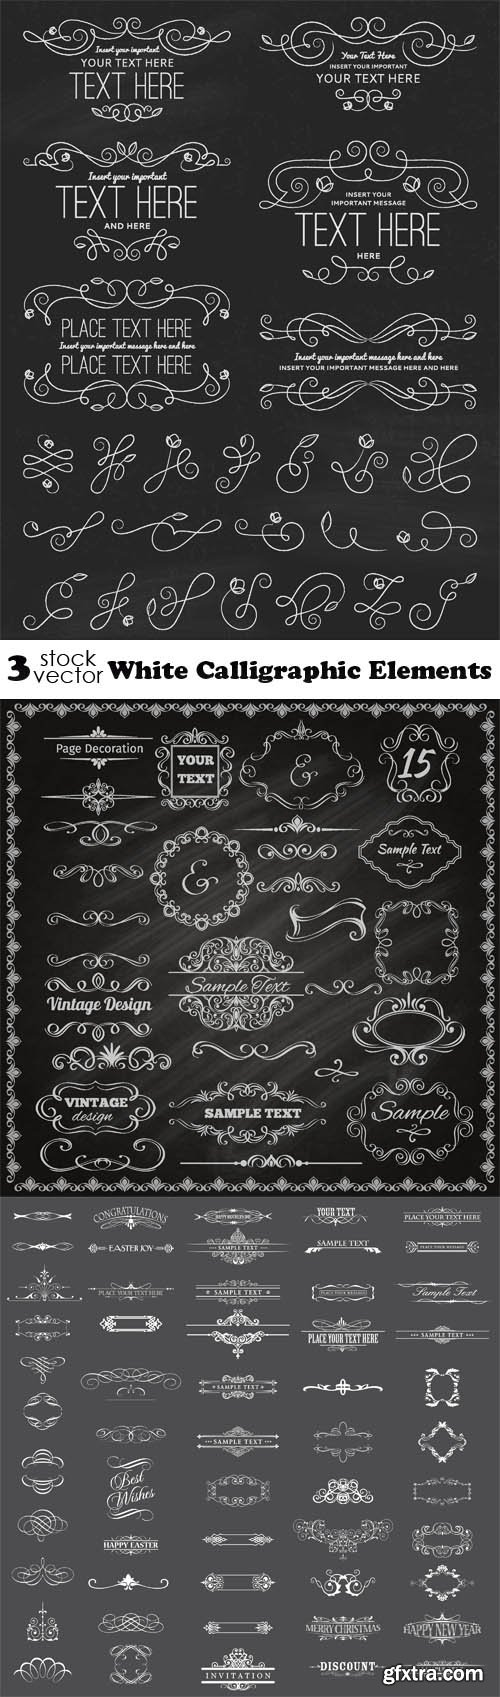 Vectors - White Calligraphic Elements